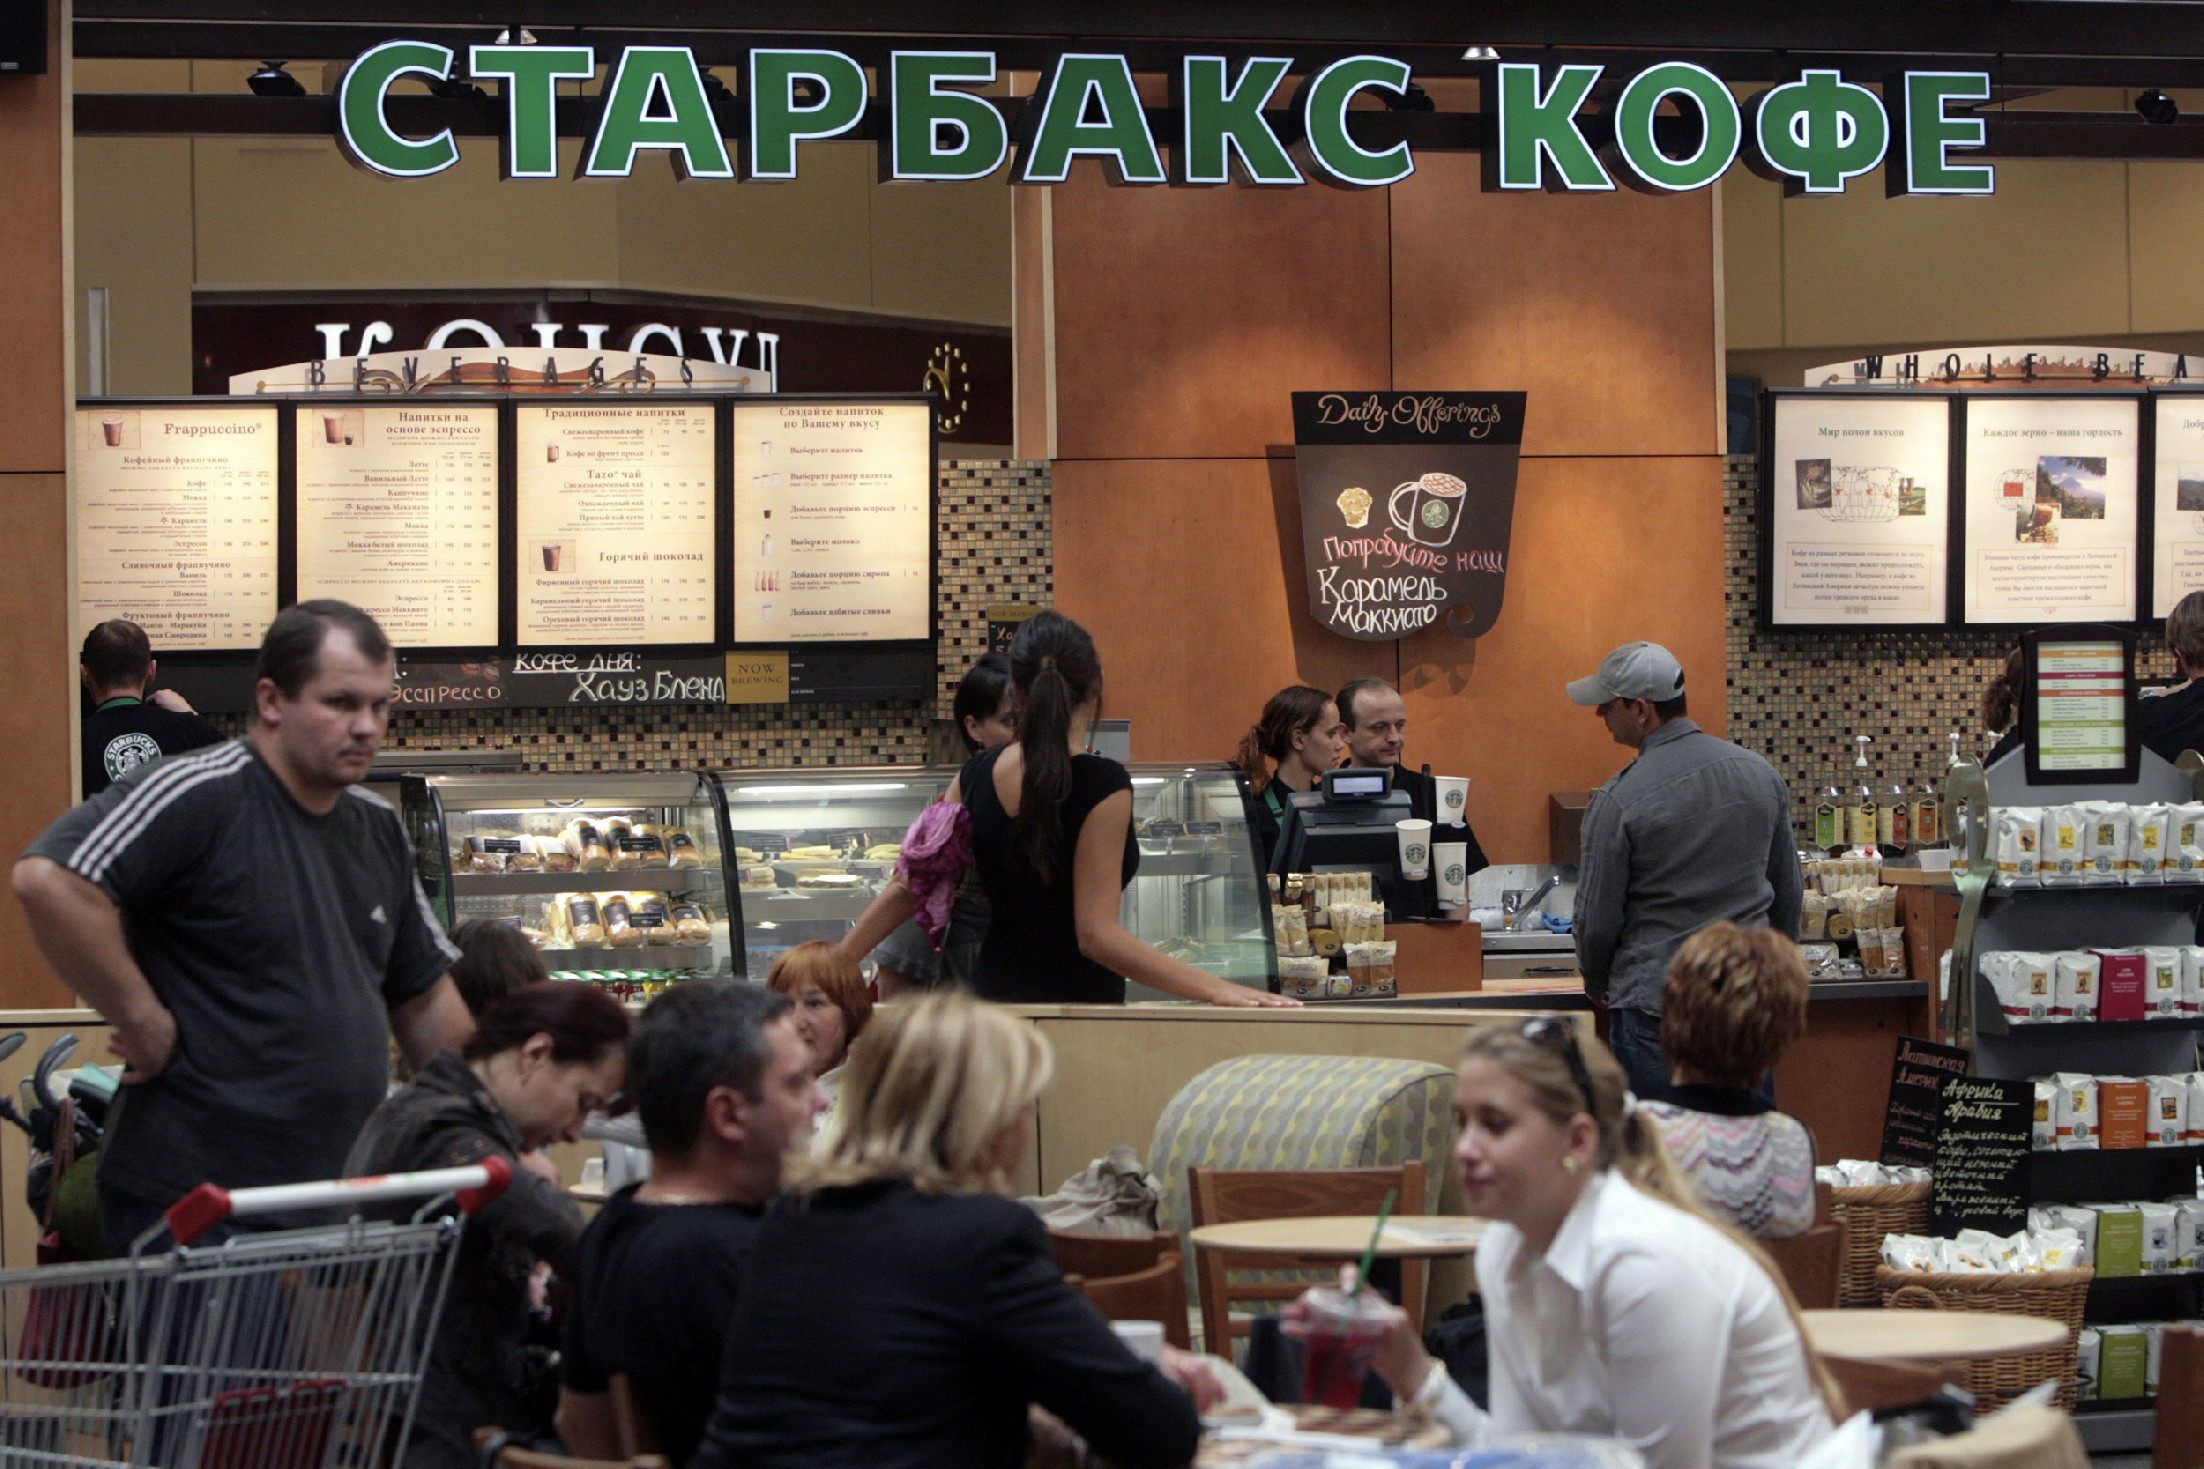 A Starbucks is kivonul az orosz piacról